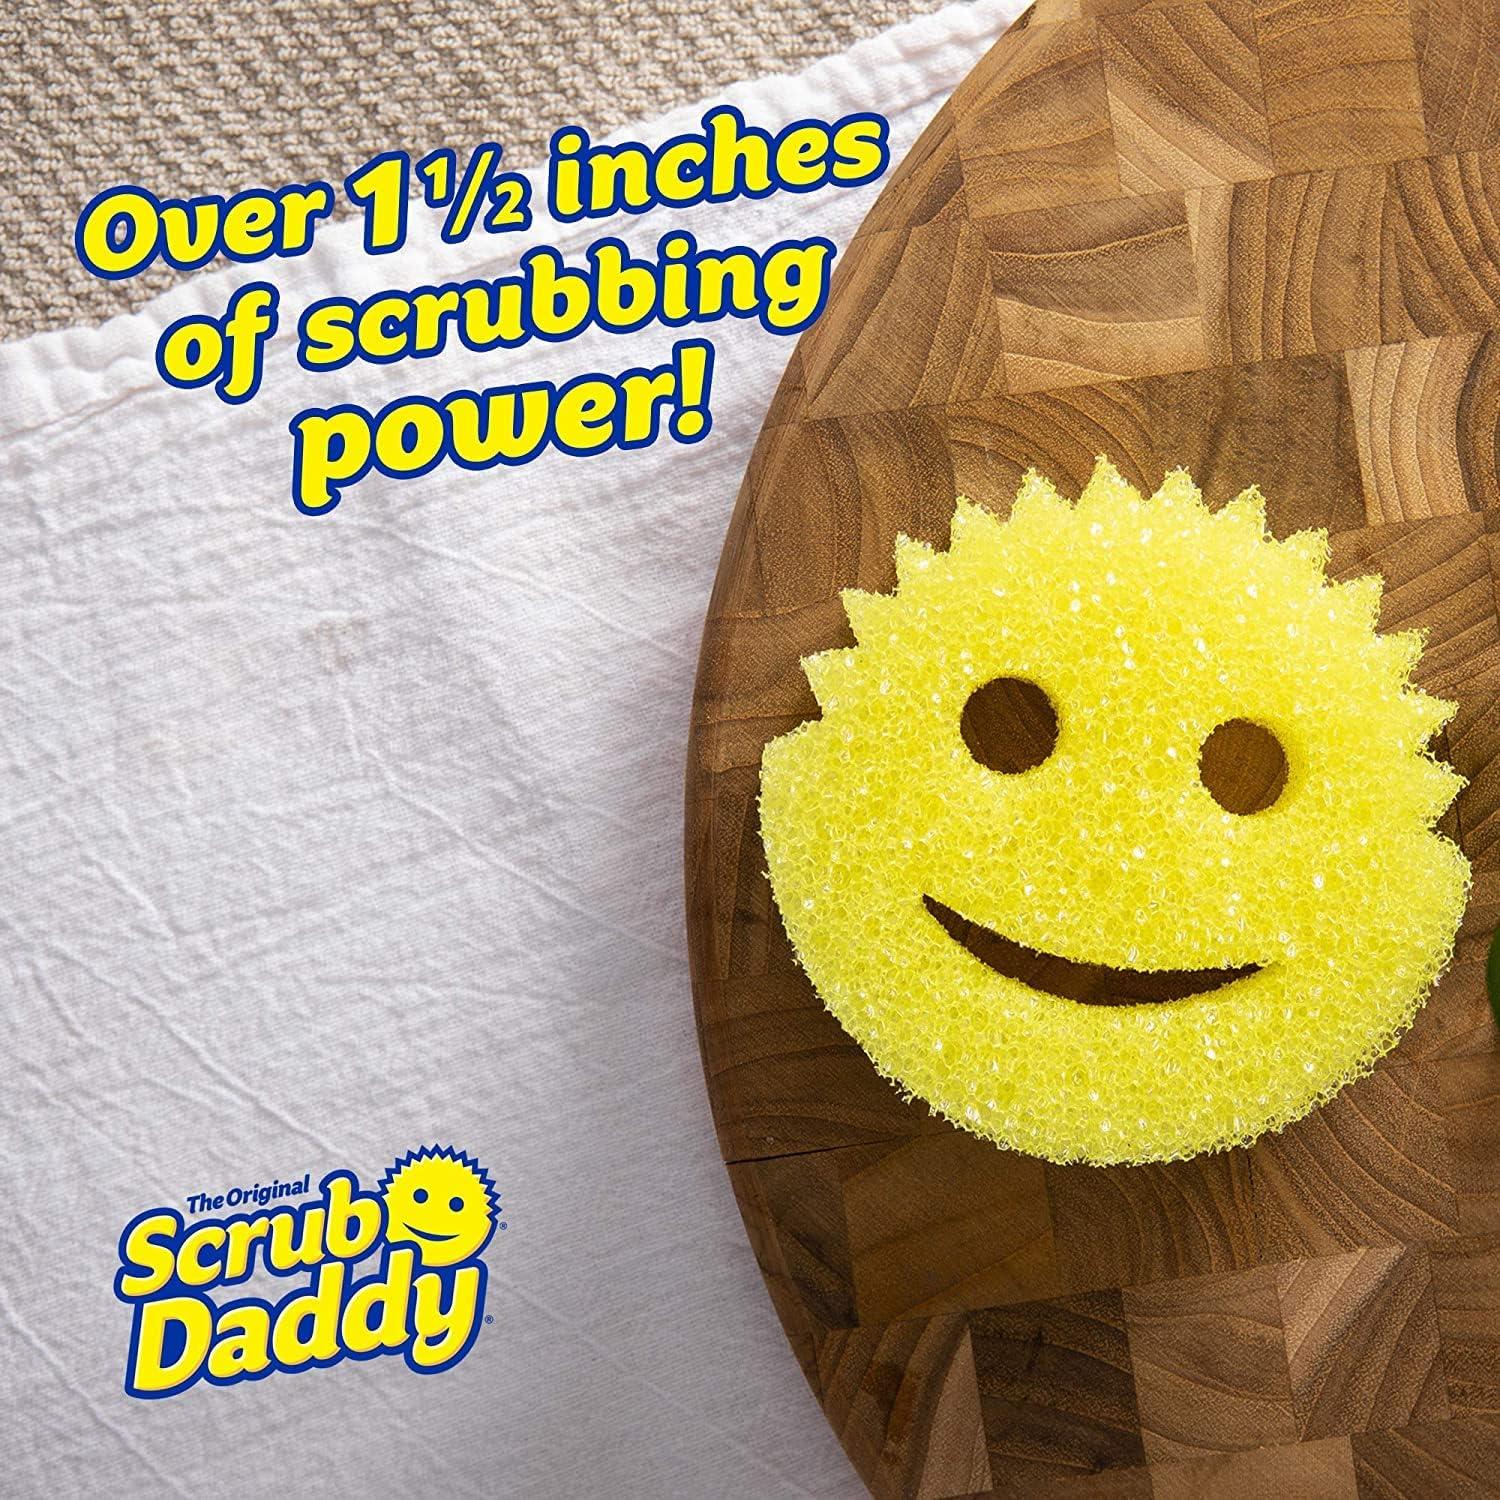 Dish Daddy - Scrub Daddy Australia